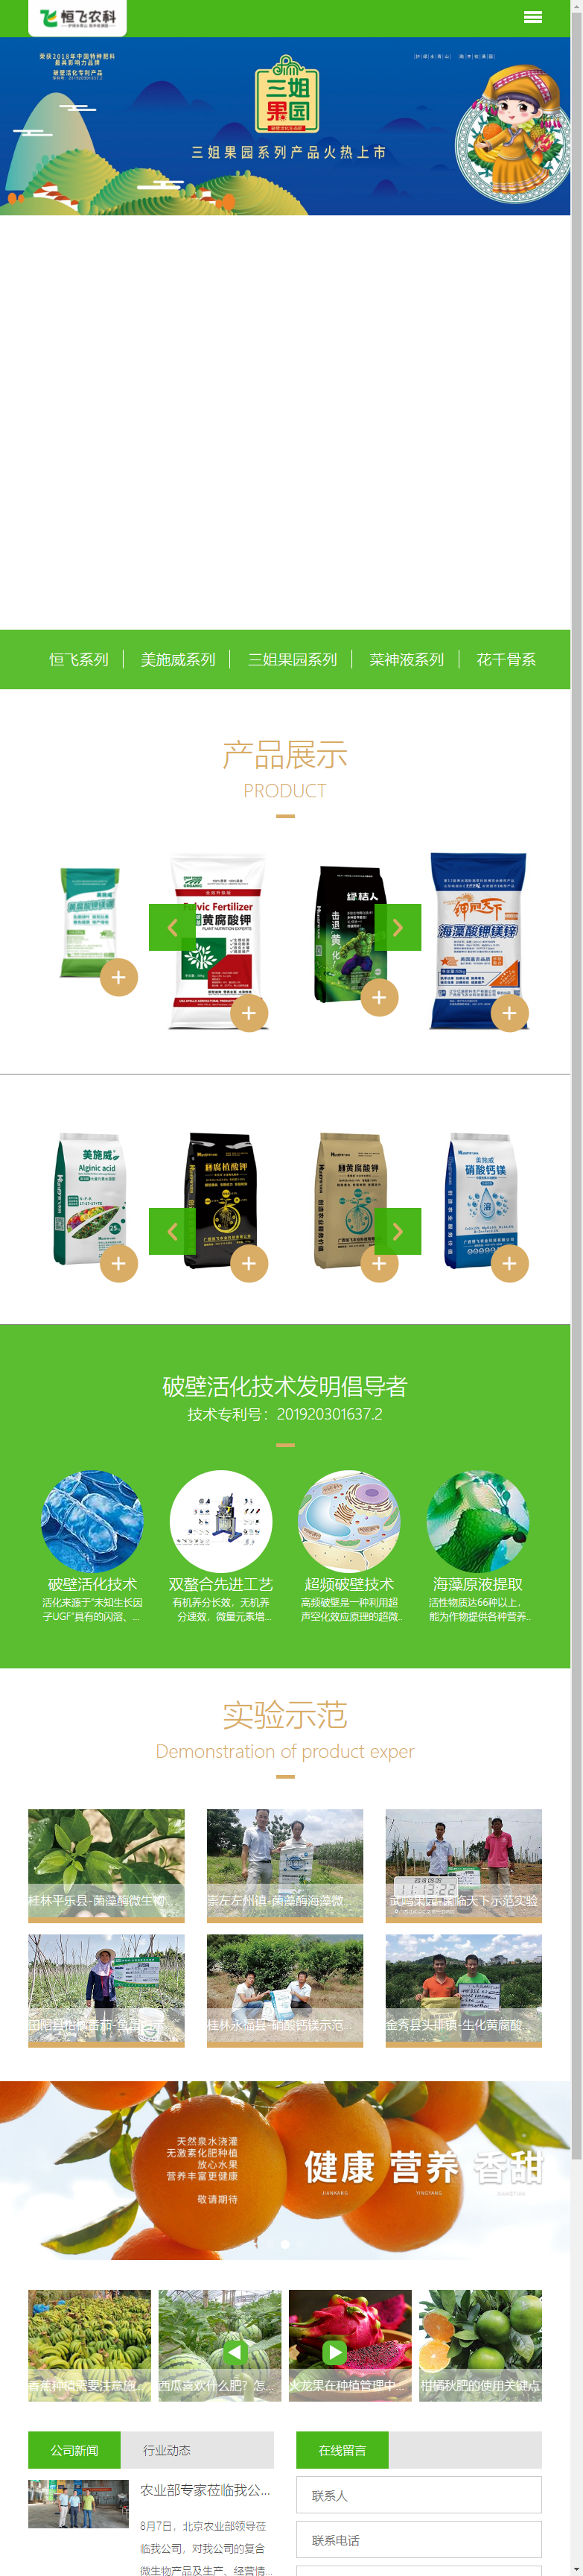 广西恒飞农业科技有限公司网站案例